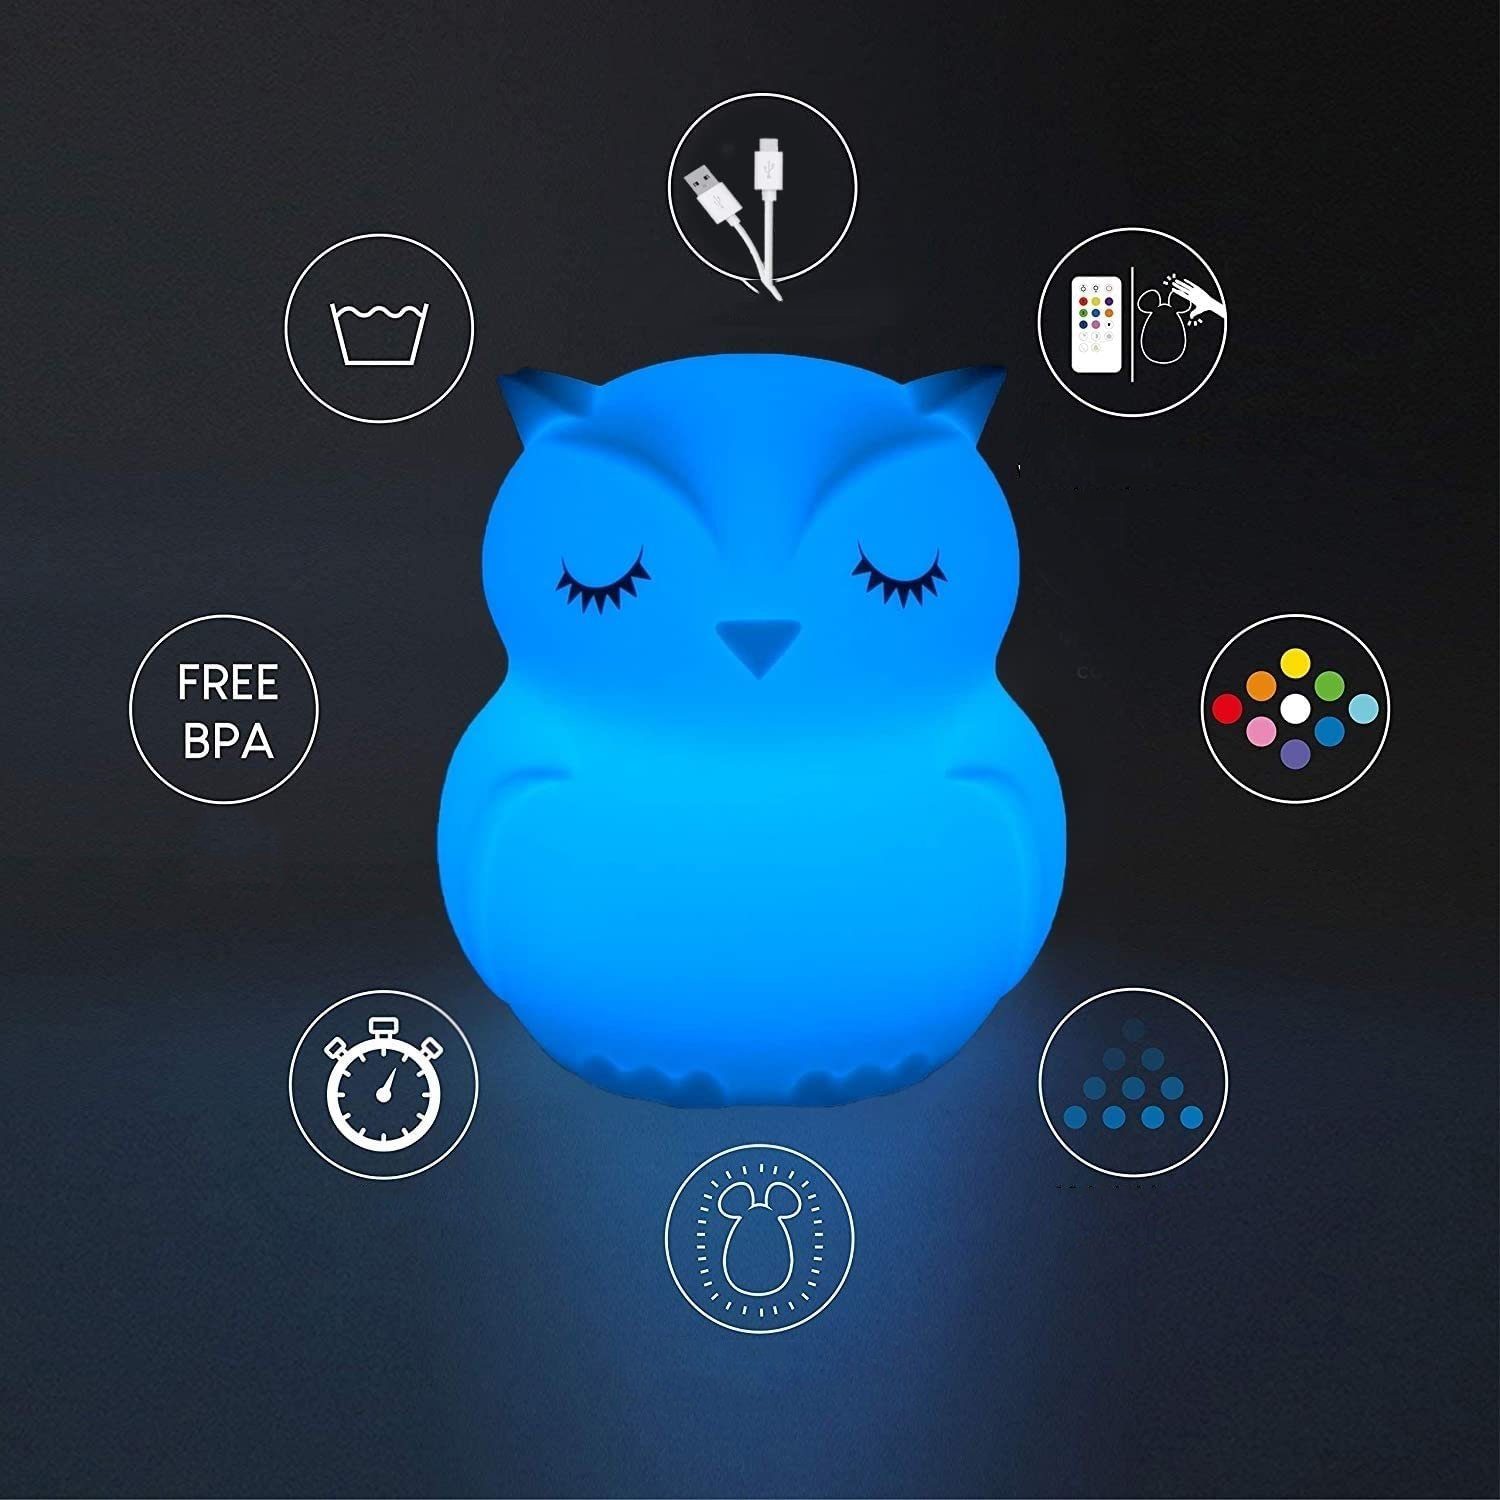 Fernbedienung LED Nachtlampe Nachtlicht mit Dimmbar Nachtlicht Baby USB Silikon GelldG